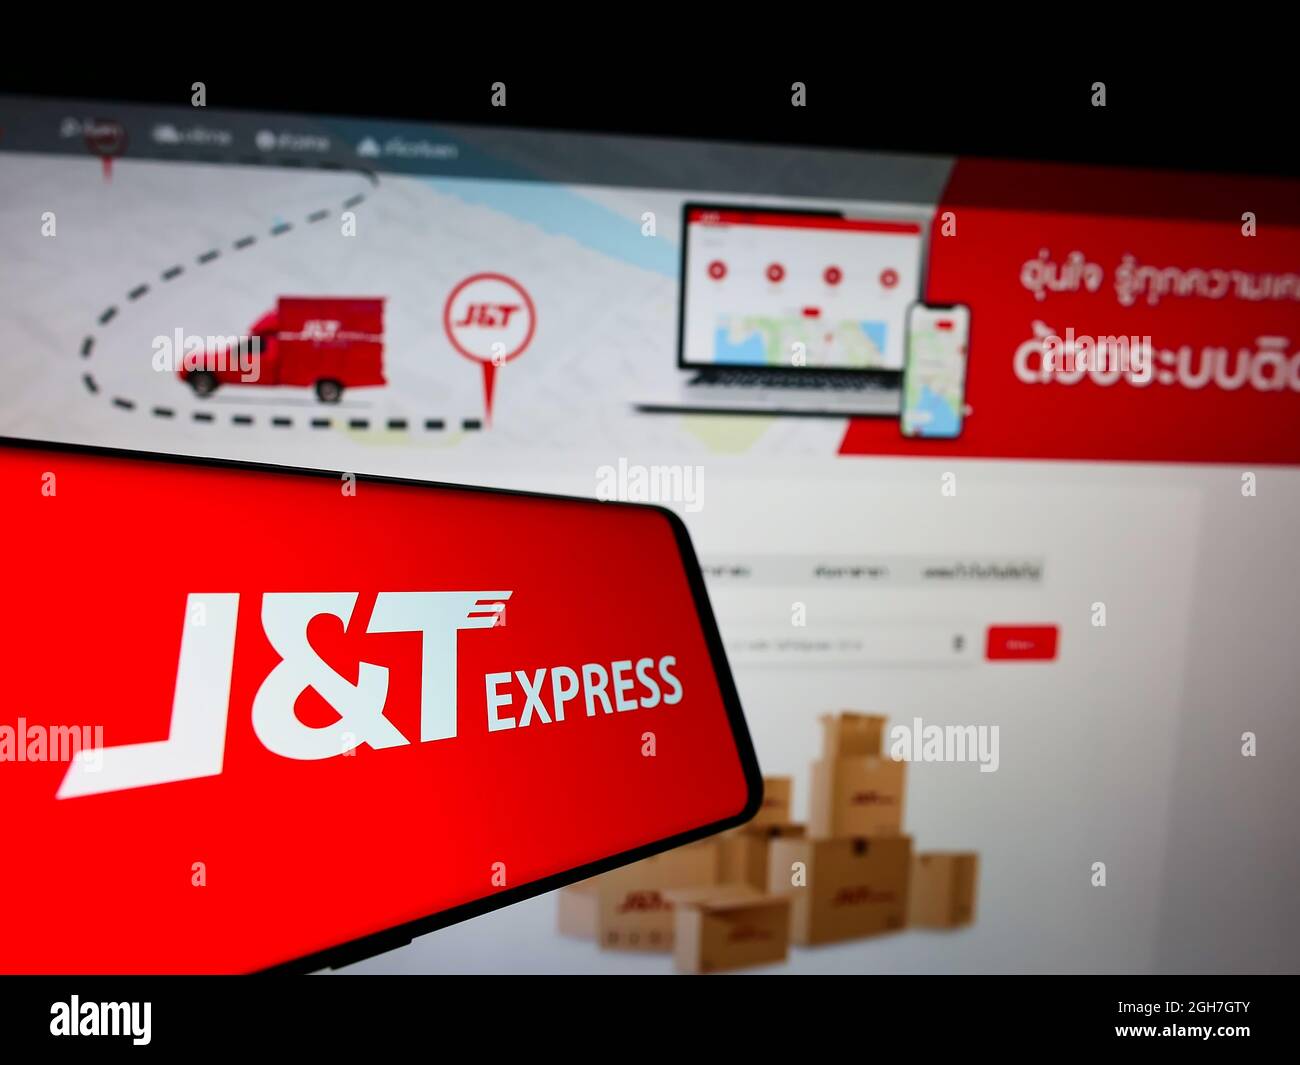 Téléphone portable avec logo de la société indonésienne PT Global Jet Express (JT) à l'écran devant le site Web des entreprises. Effectuez la mise au point au centre-droit de l'écran du téléphone. Banque D'Images